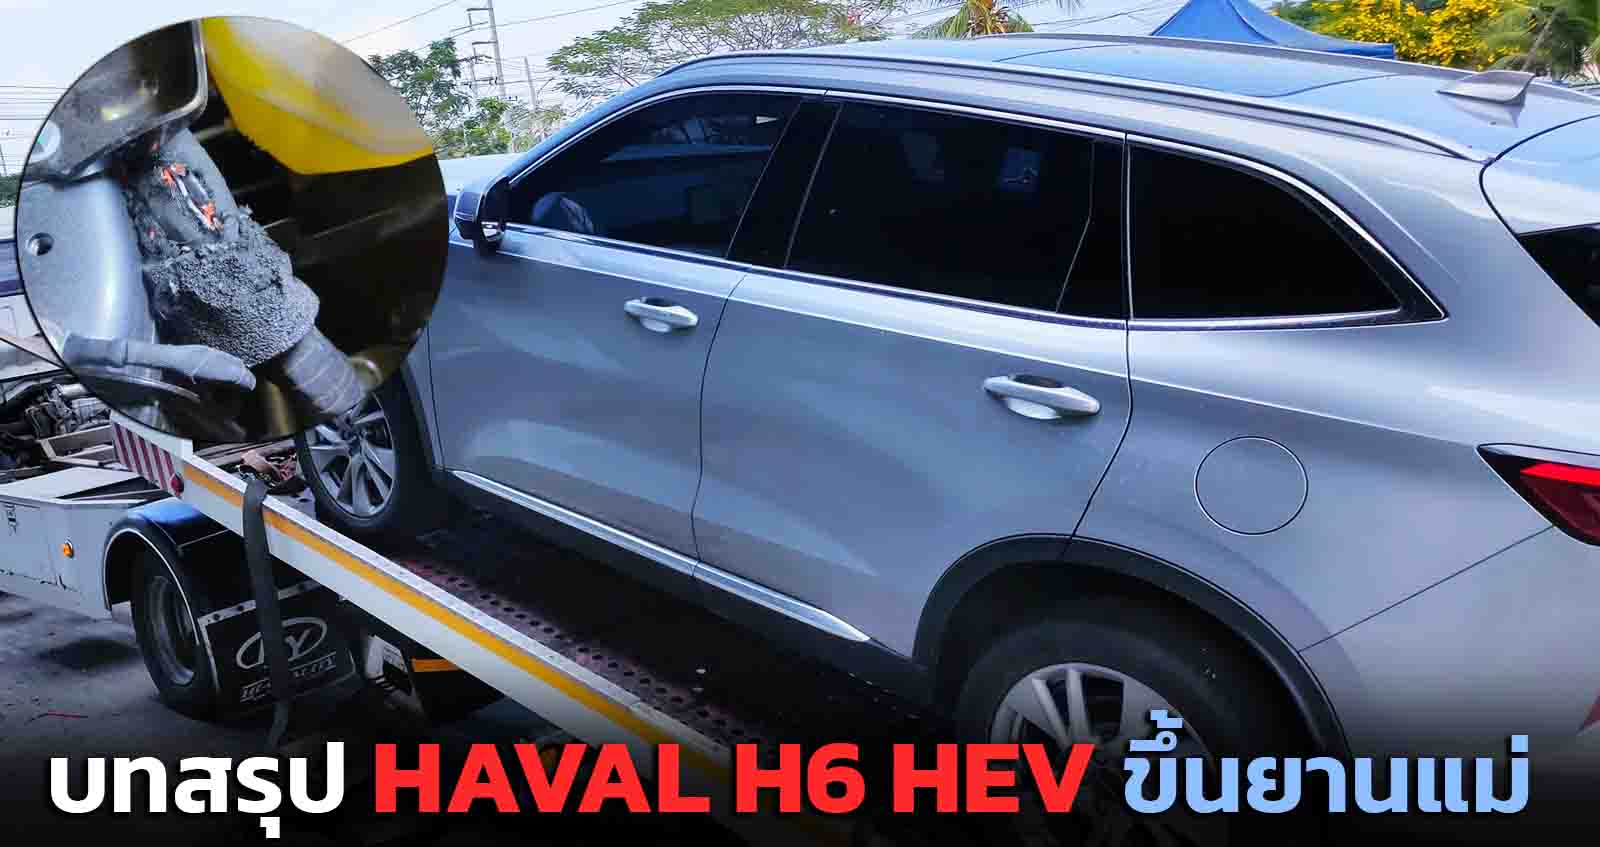 บทสรุป HAVAL H6 HEV ขึ้นยานแม่ ส่งเข้าศูนย์ เรื่องระบบไฮบริดมีปัญหา พีคมากกกกก!!!!!!